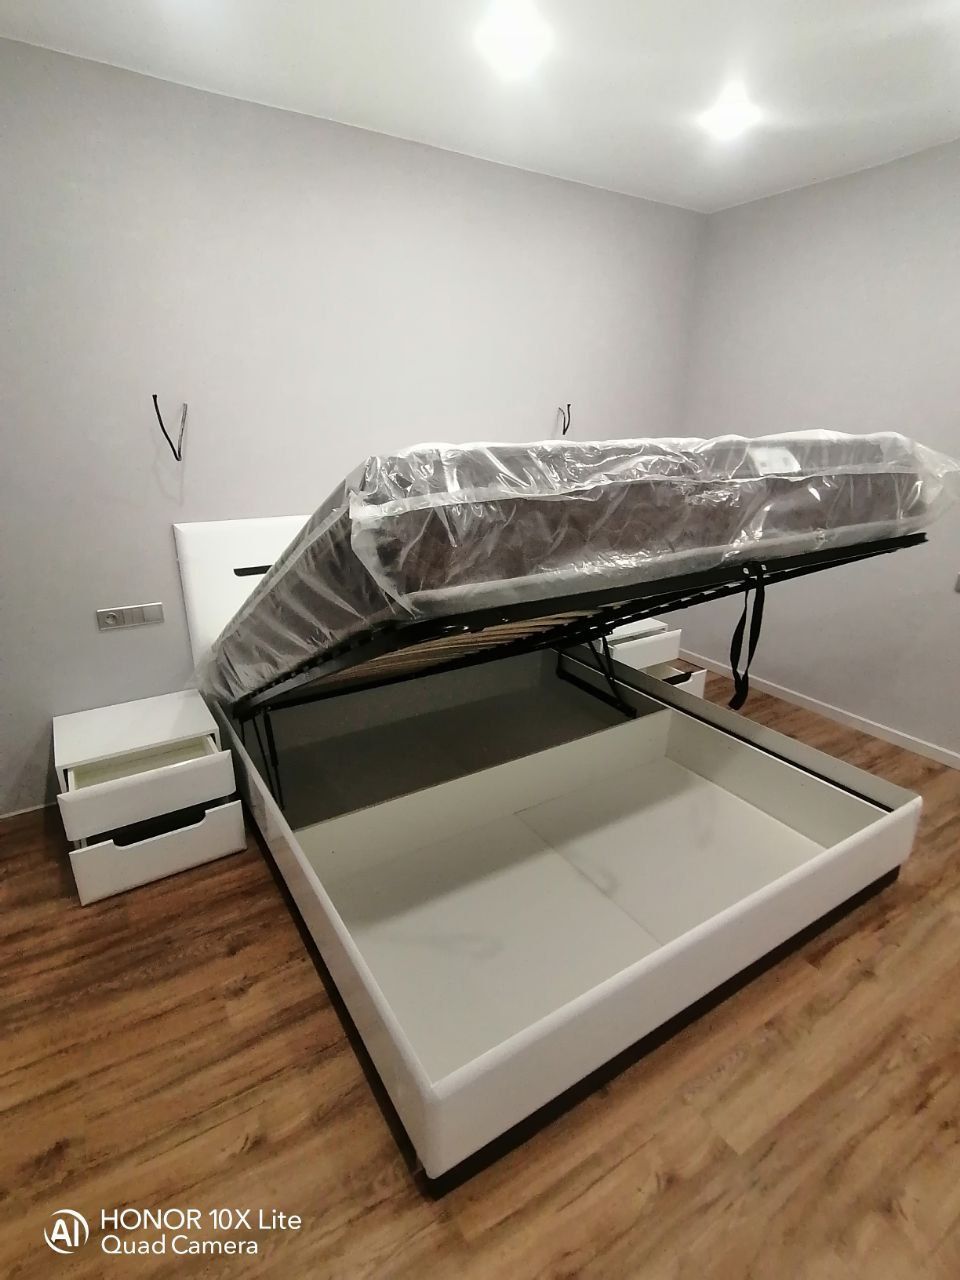 Полутораспальная кровать "Парма" 120 х 190 с ортопедическим основанием цвет белый / сонома